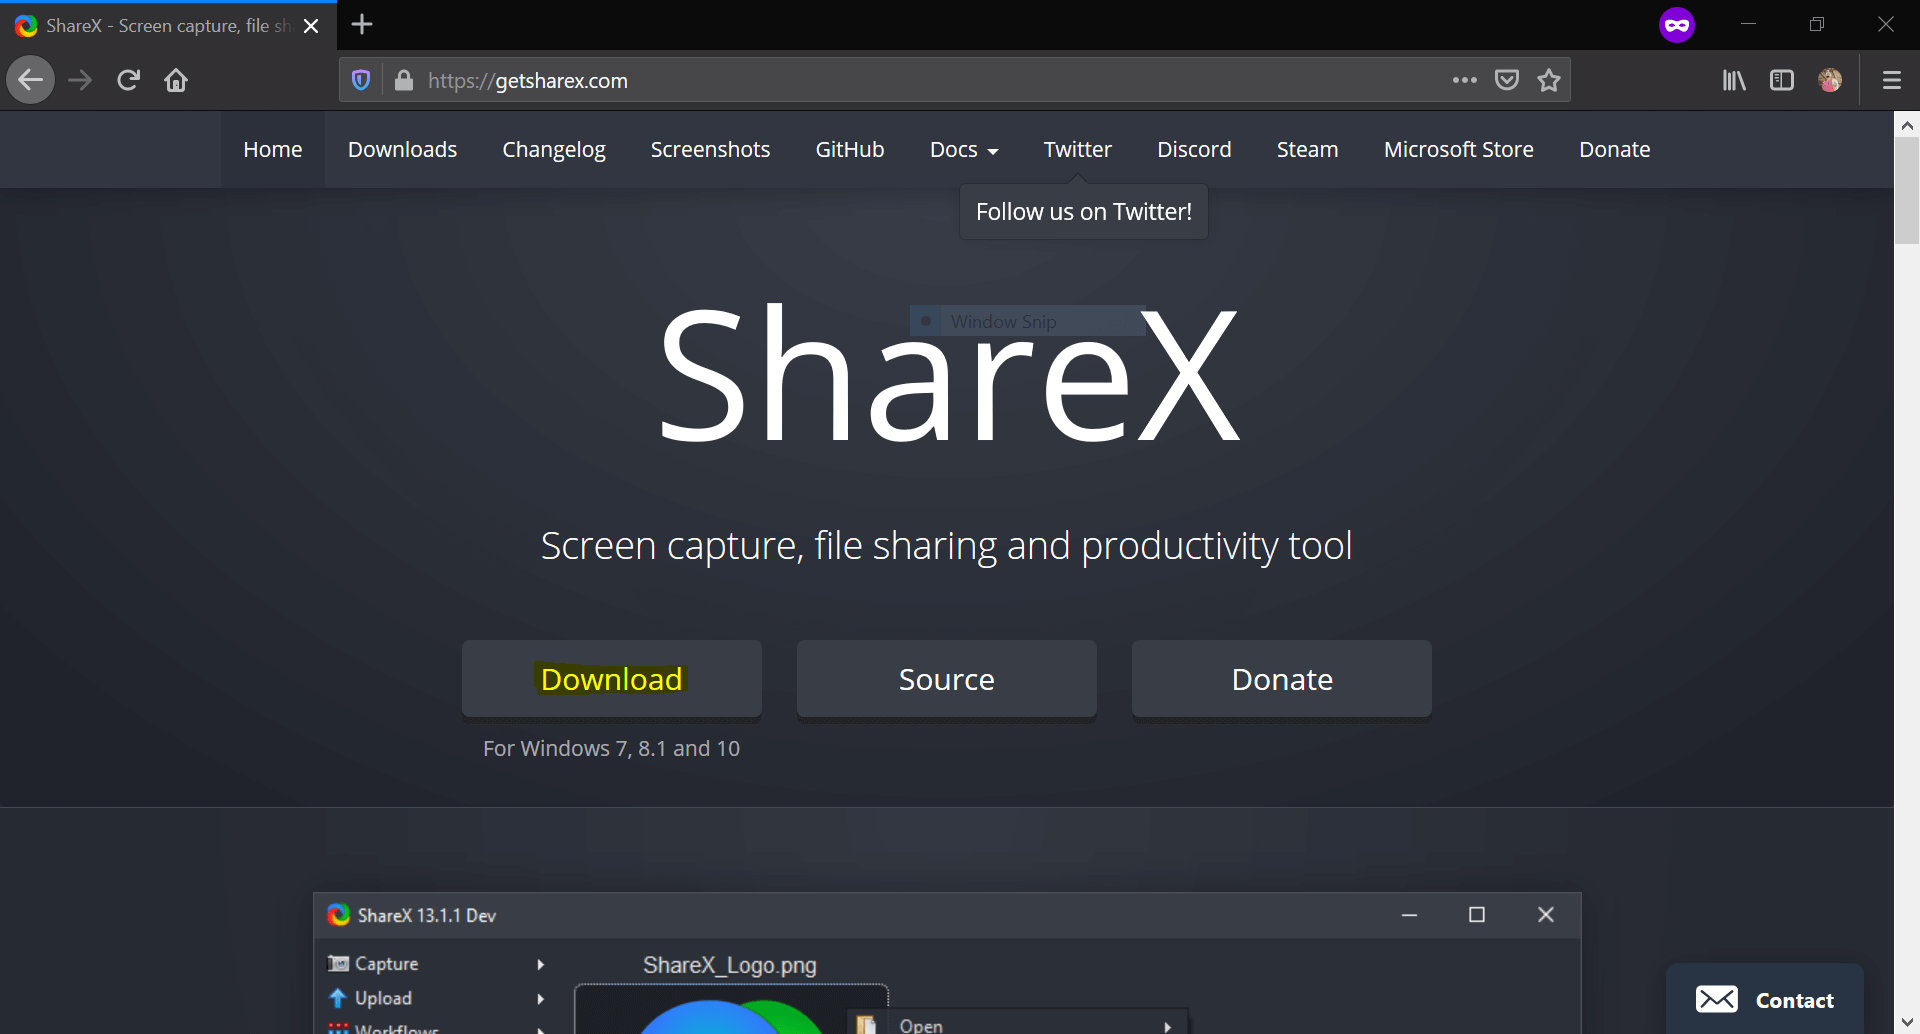 sharex screenshot both screens